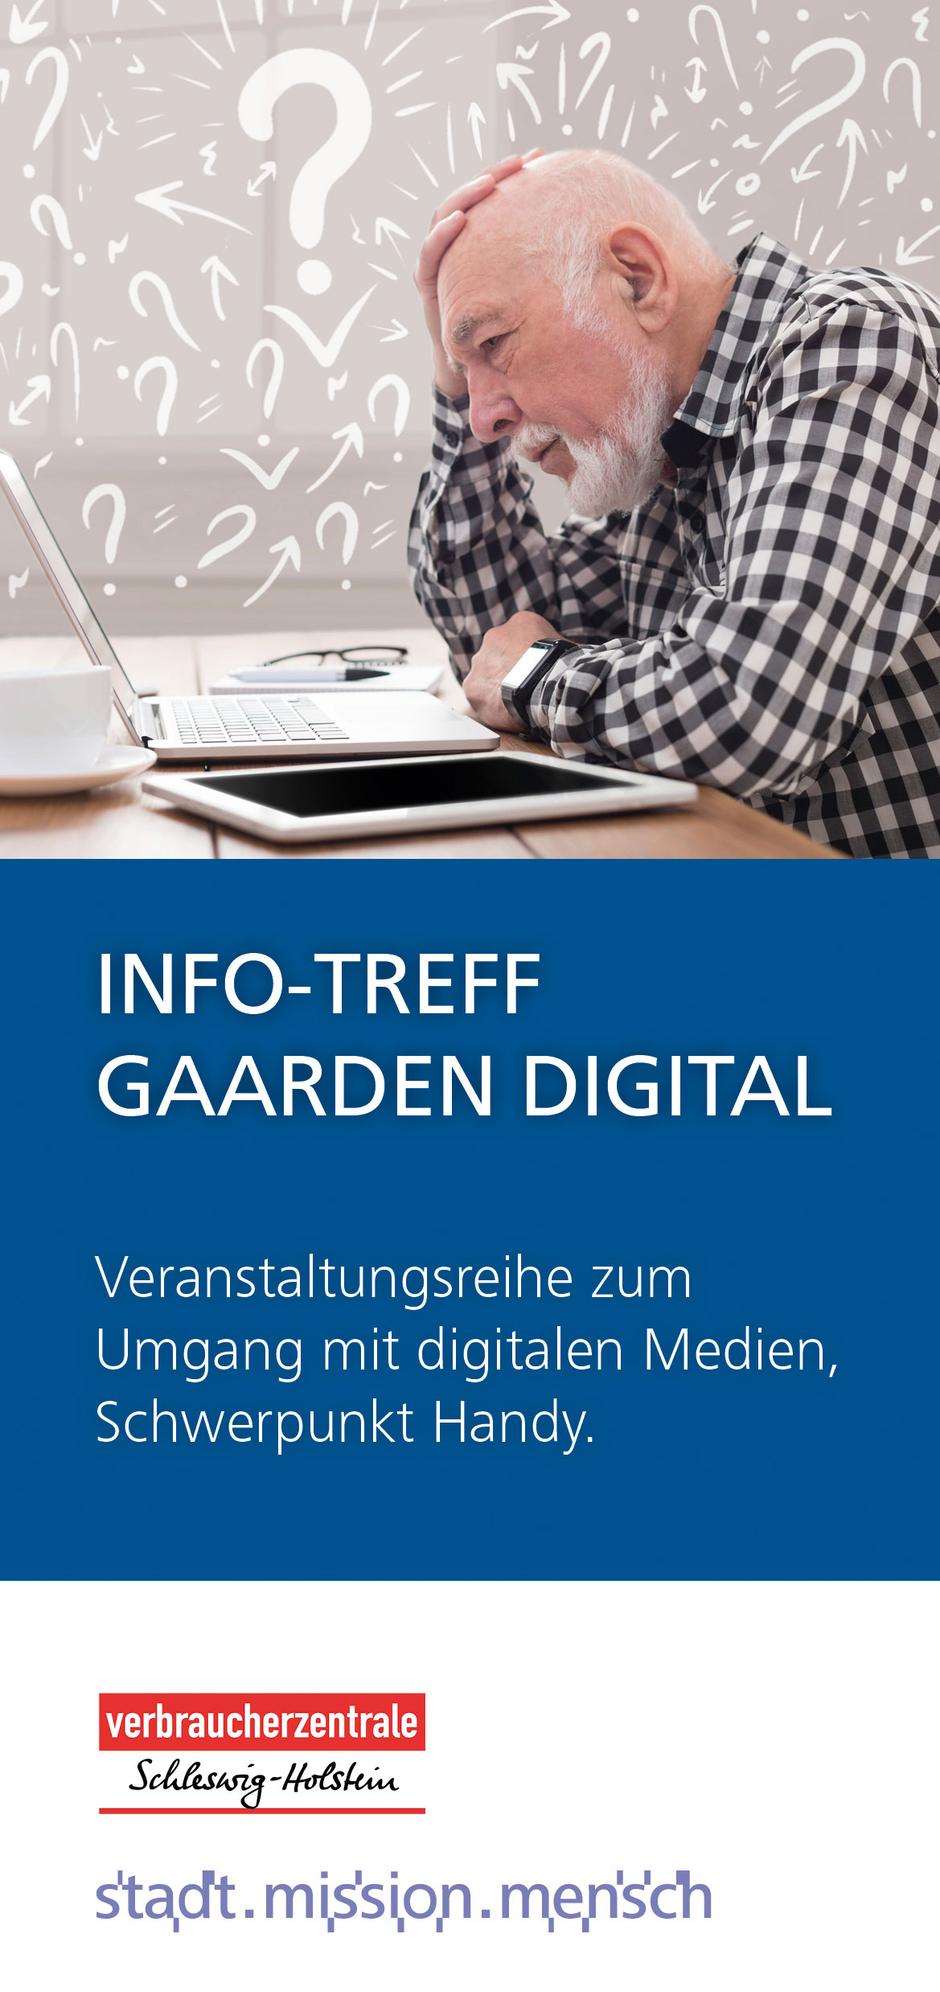 Info-Treff Gaarden Digital